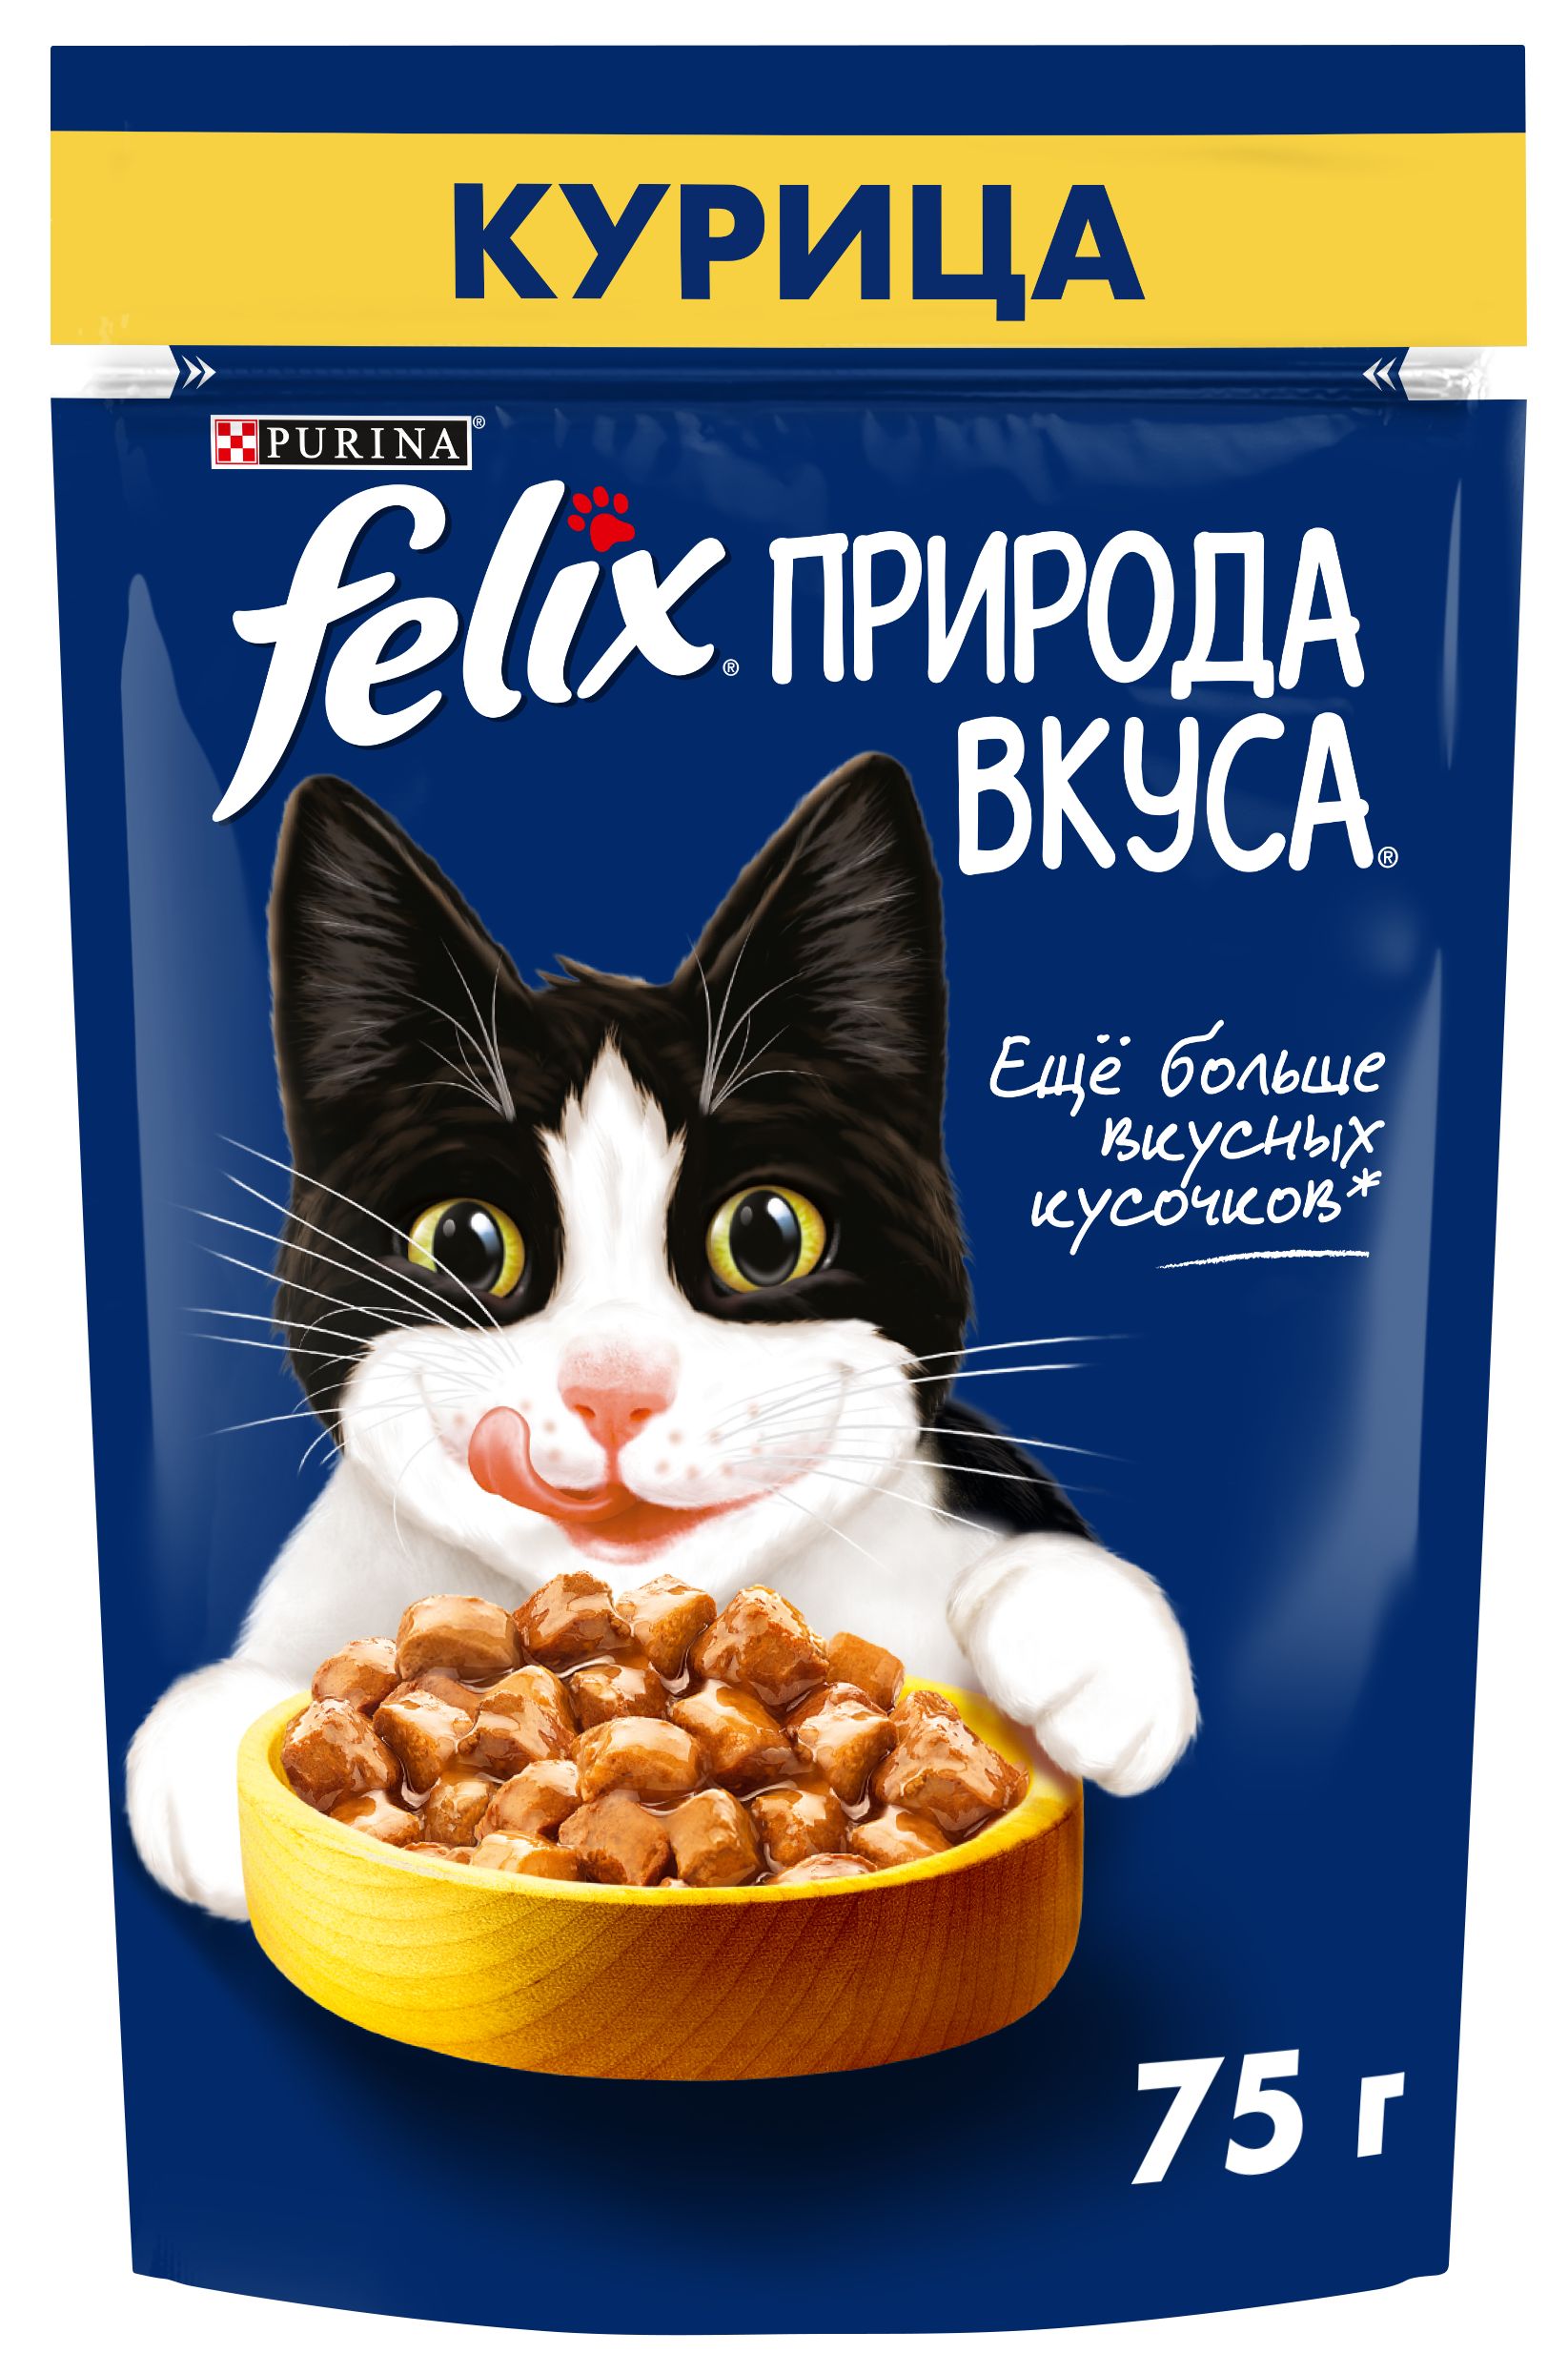 Felix влажный корм для кошек. Корм Purina Felix. Felix природа вкуса корм для кошек лосось 75г.